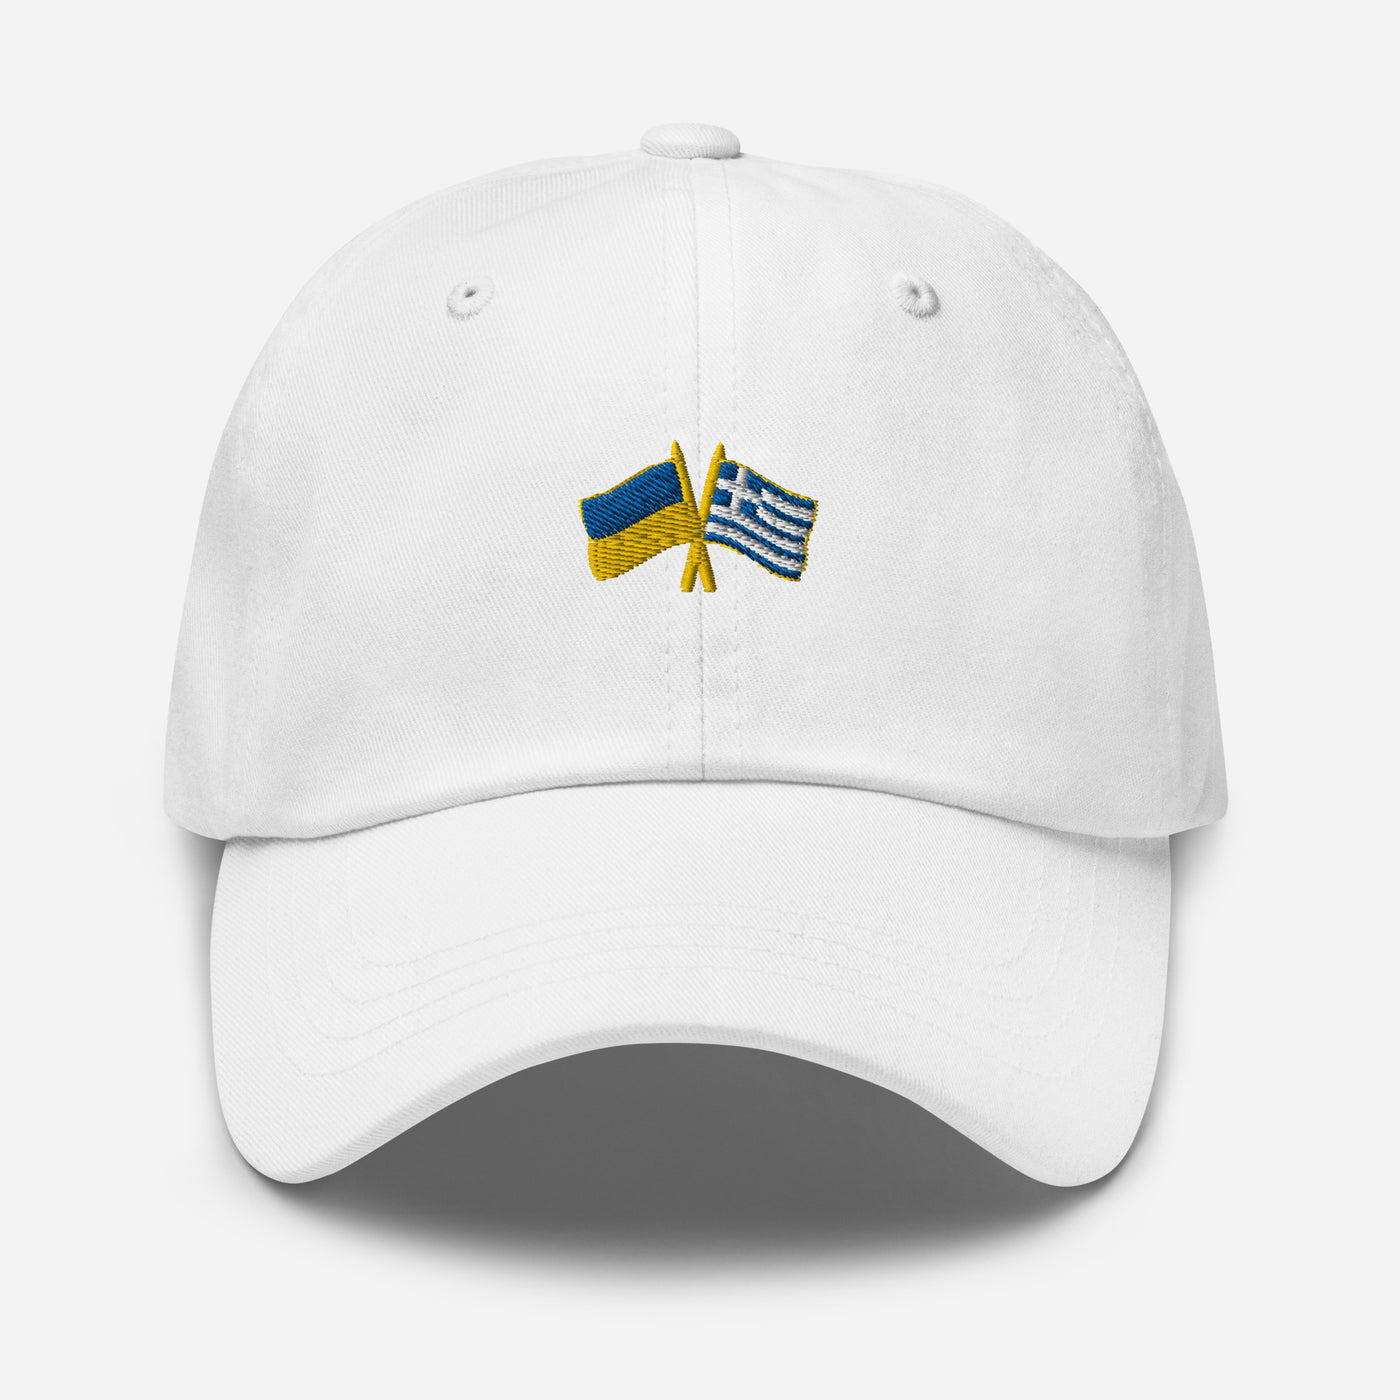 Greece-Ukraine Cap Embroidery